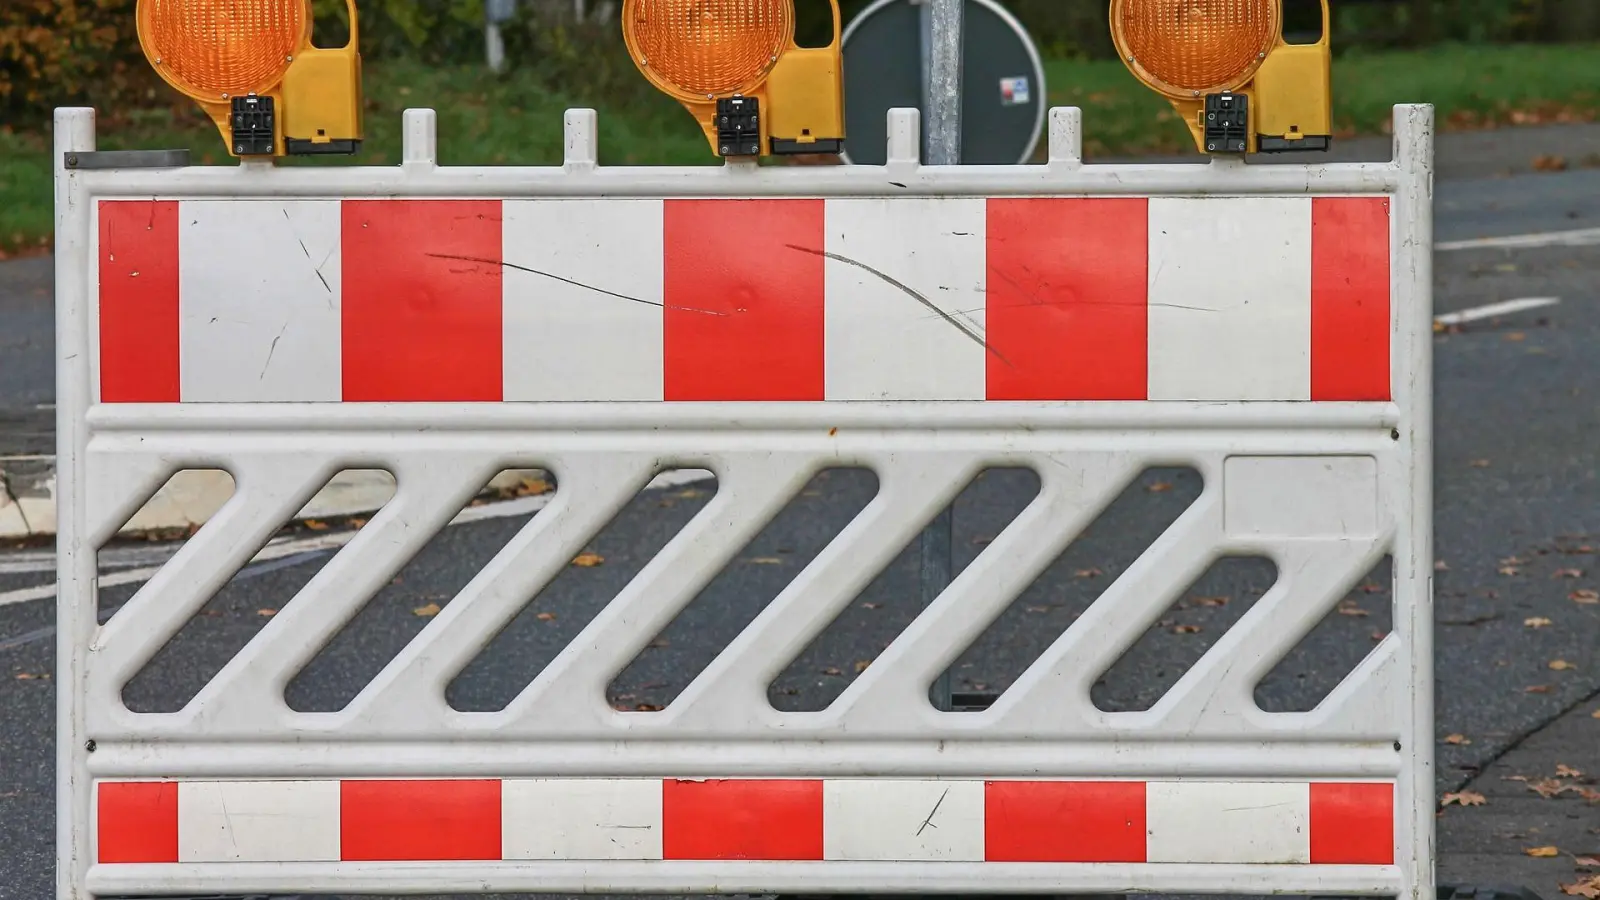 S31 in Oschatz noch bis 17. September gesperrt (Foto: taucha-kompakt.de)